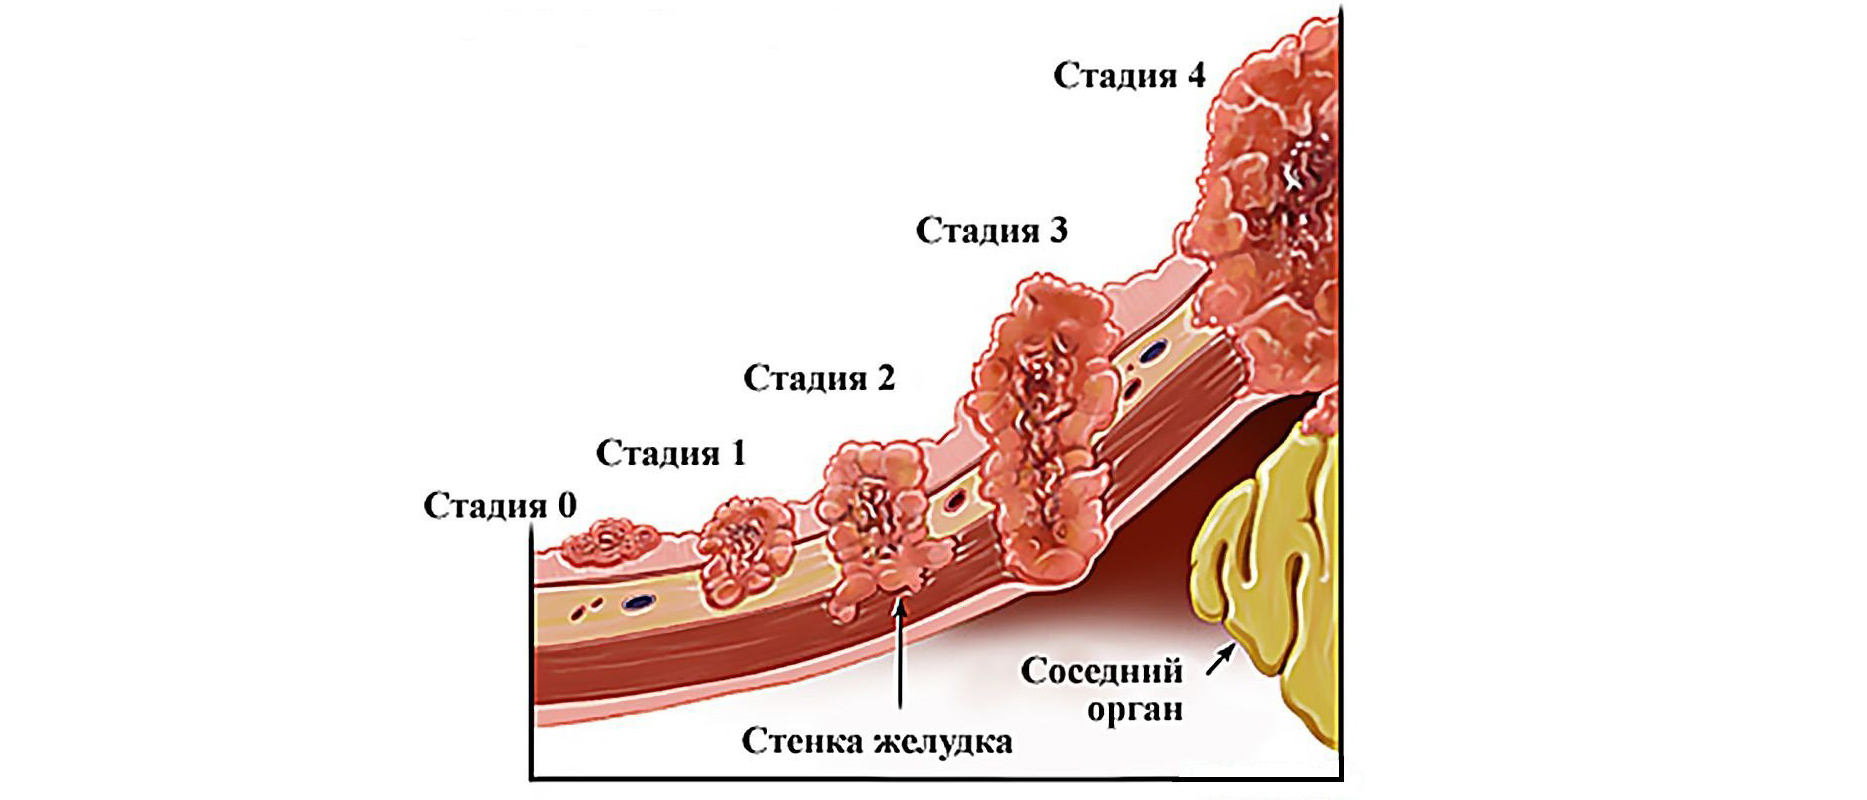 Форум рака желудка отзывы. Стадии развития опухоли желудка. 3 Стадии развития опухоли. Степени онкологии желудка.